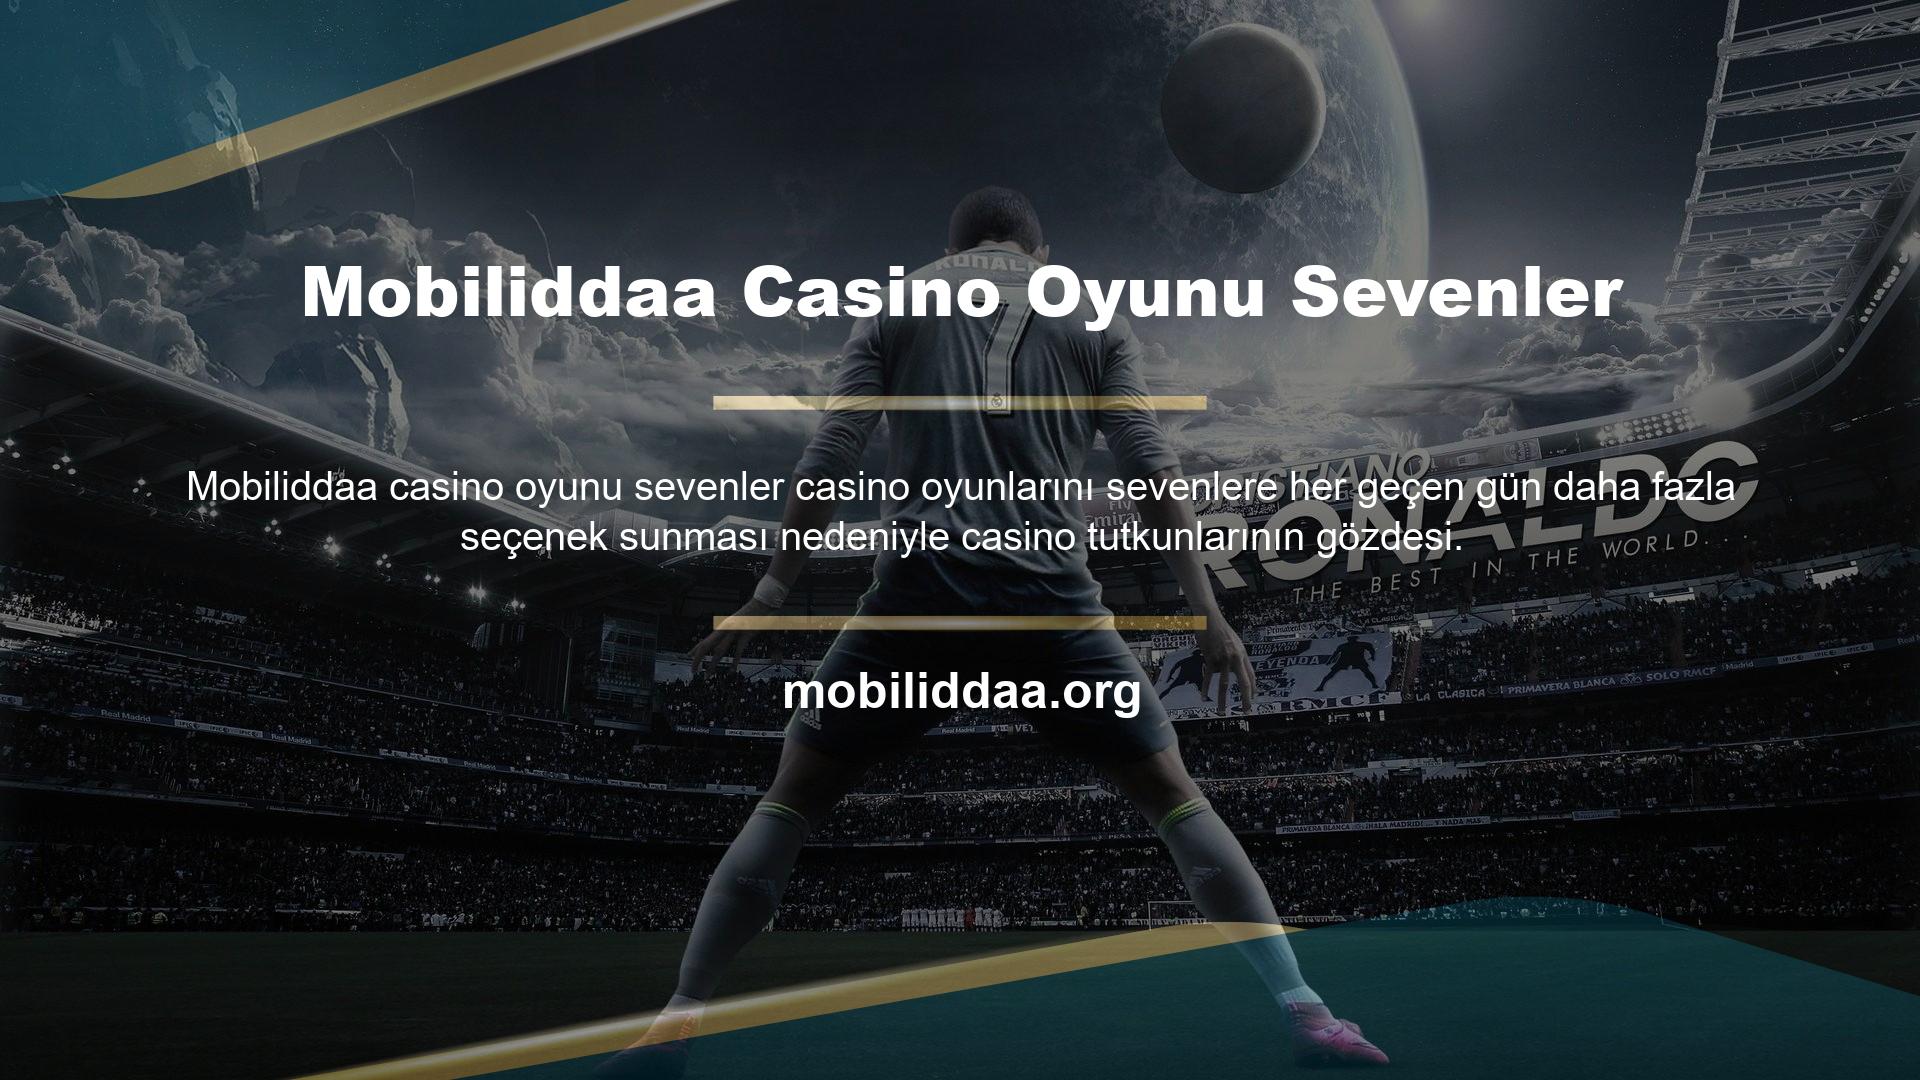 Mobiliddaa Casino seçenekleri, bahis tutkunlarının çeşitli slot makinelerine, masa oyunlarına ve klasik slot makinesi oyunlarına katılmasına olanak tanır